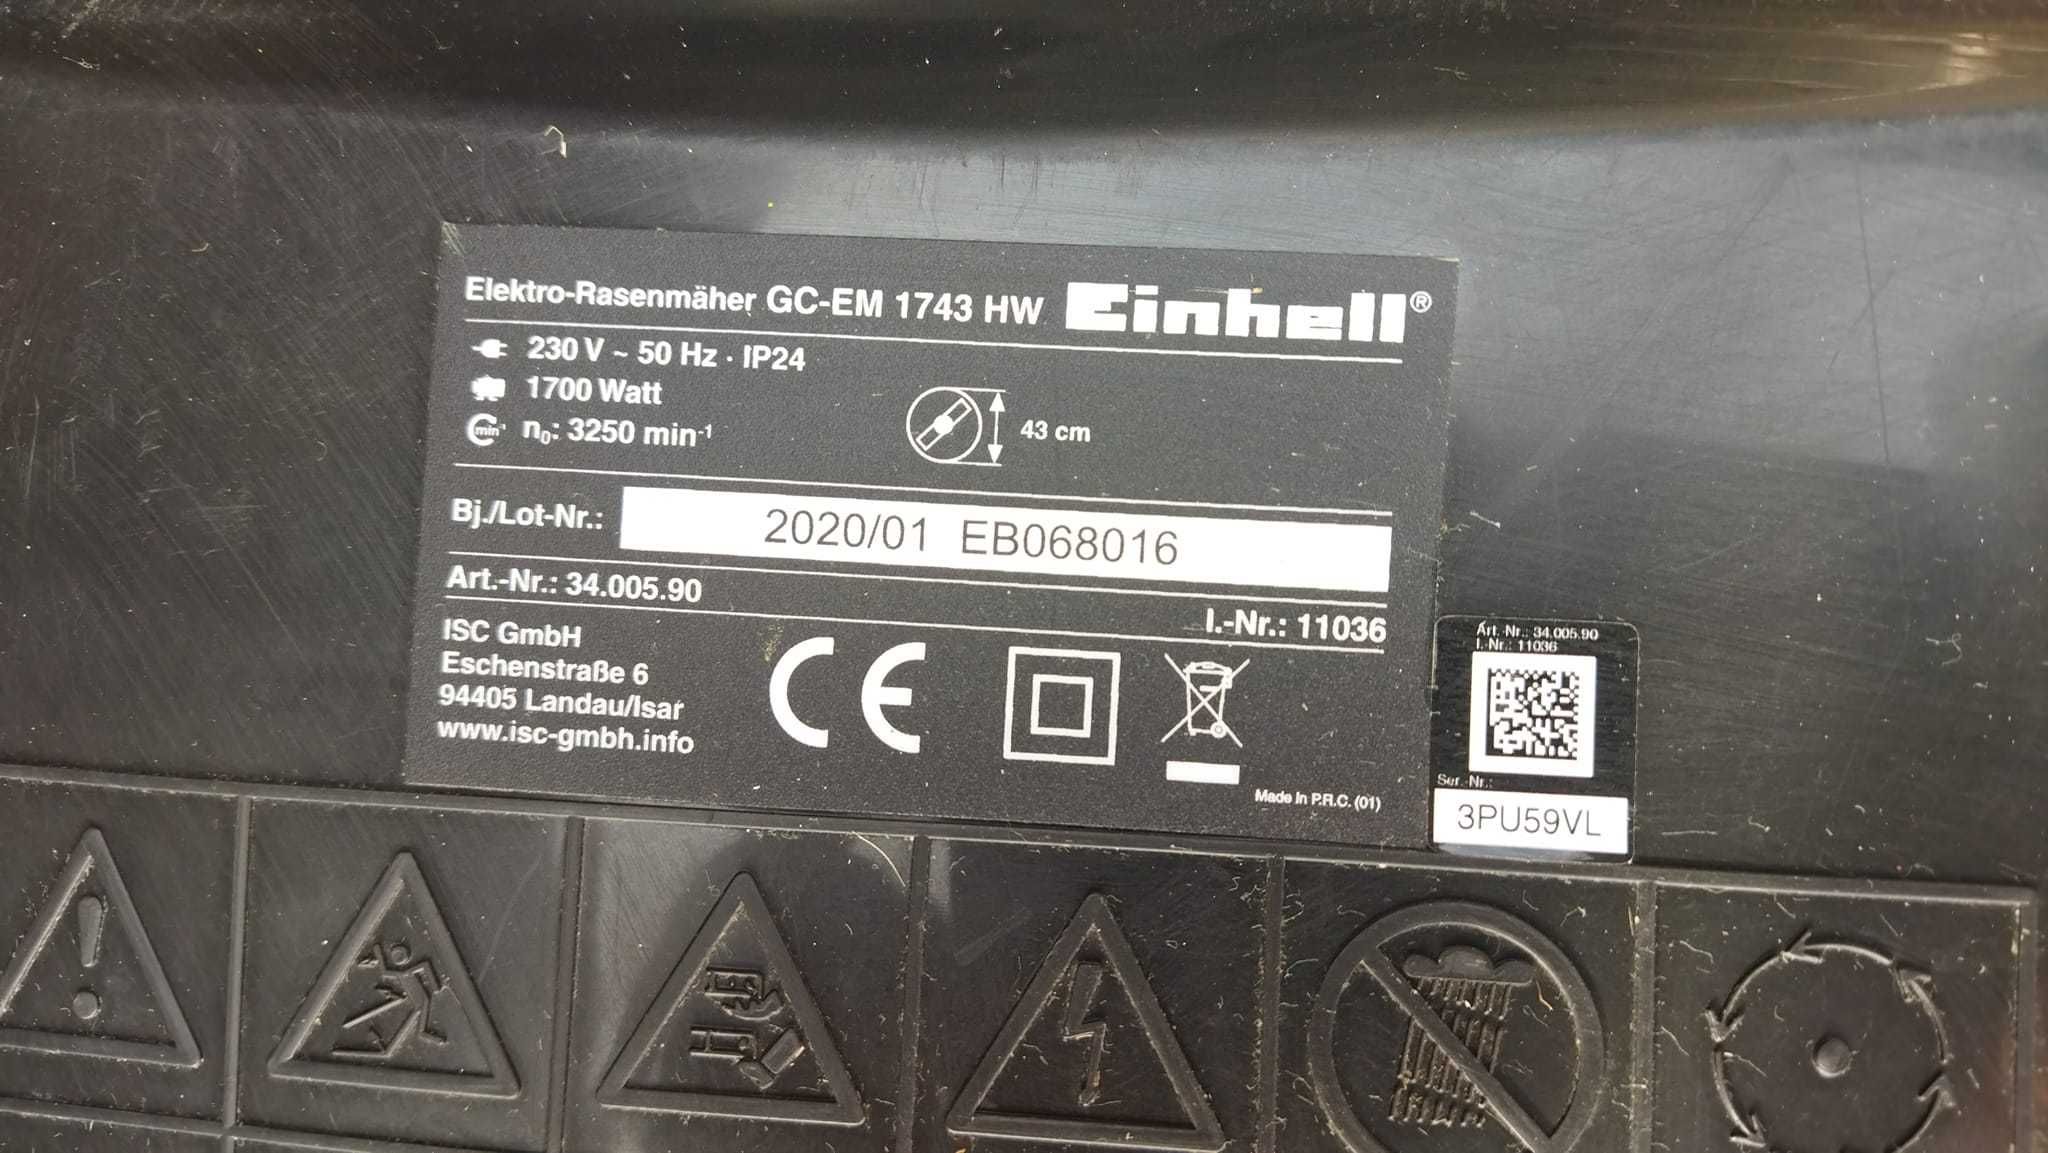 Einhell CG-EM 1743 HW Kosiarka Elektryczna Sieciowa 230V 1700W